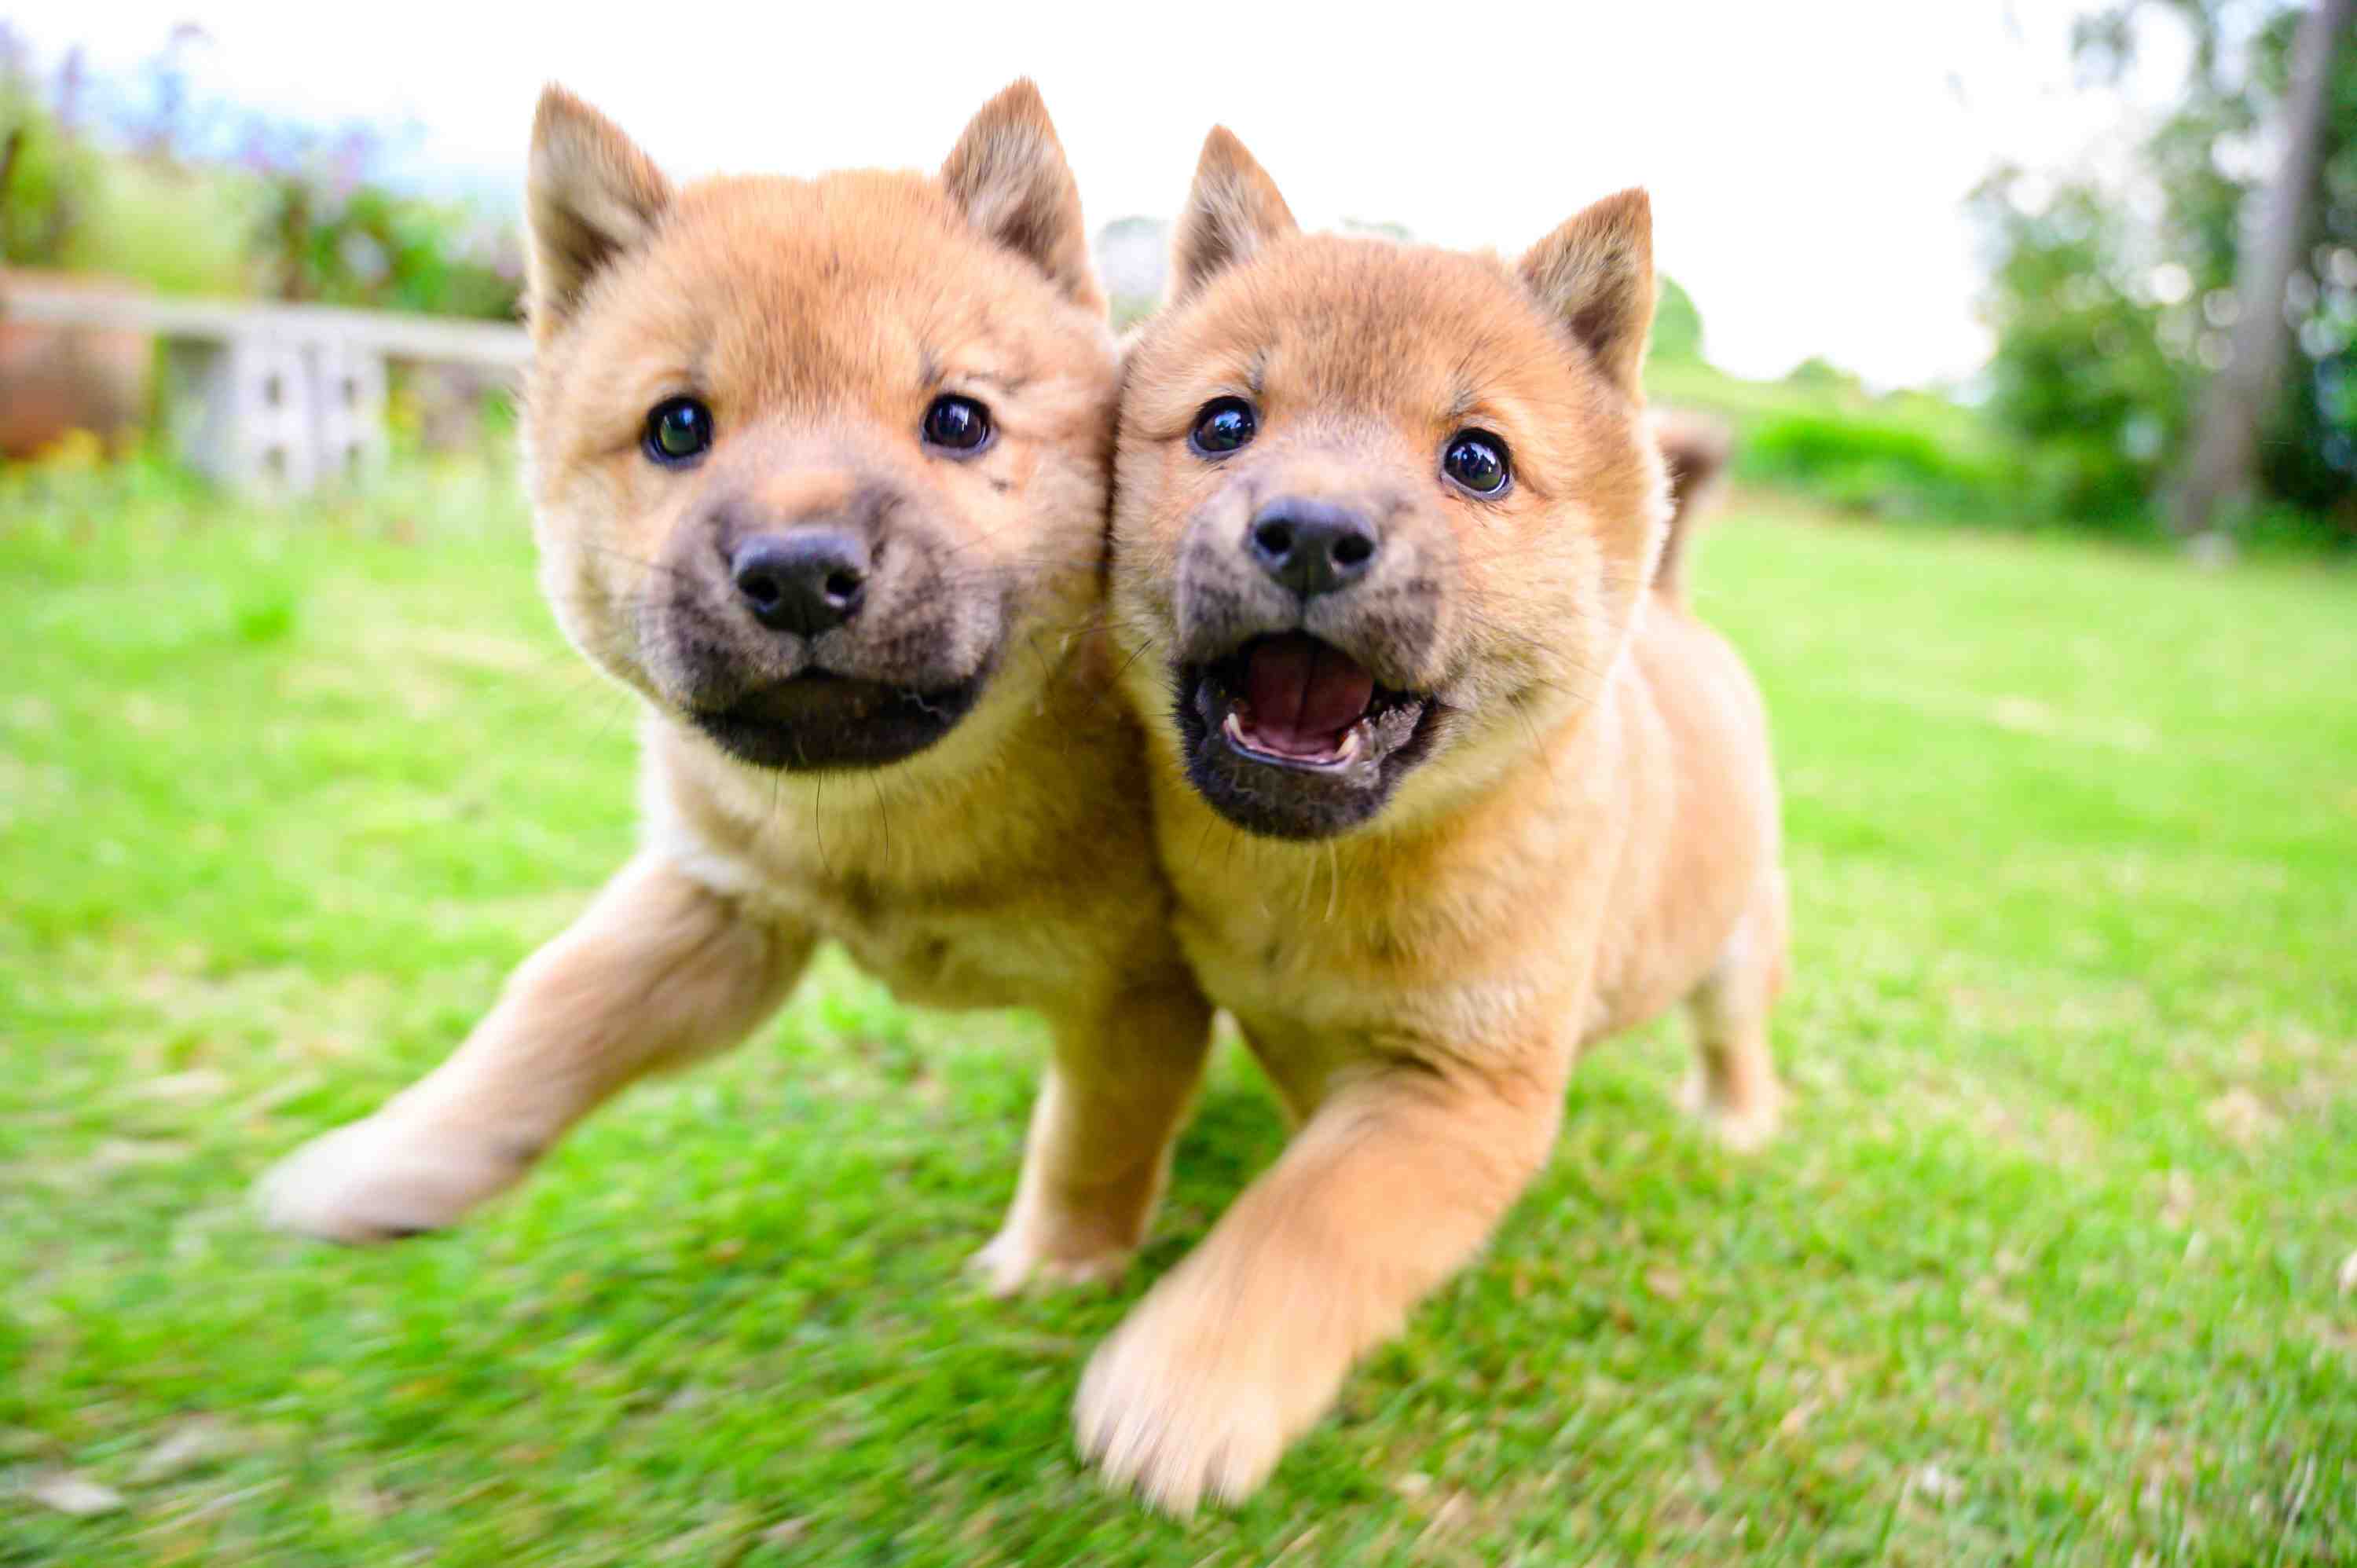 顔くっつけ走る 奇跡の一枚 山陰柴犬の兄妹新たな旅立ち Japan Forward